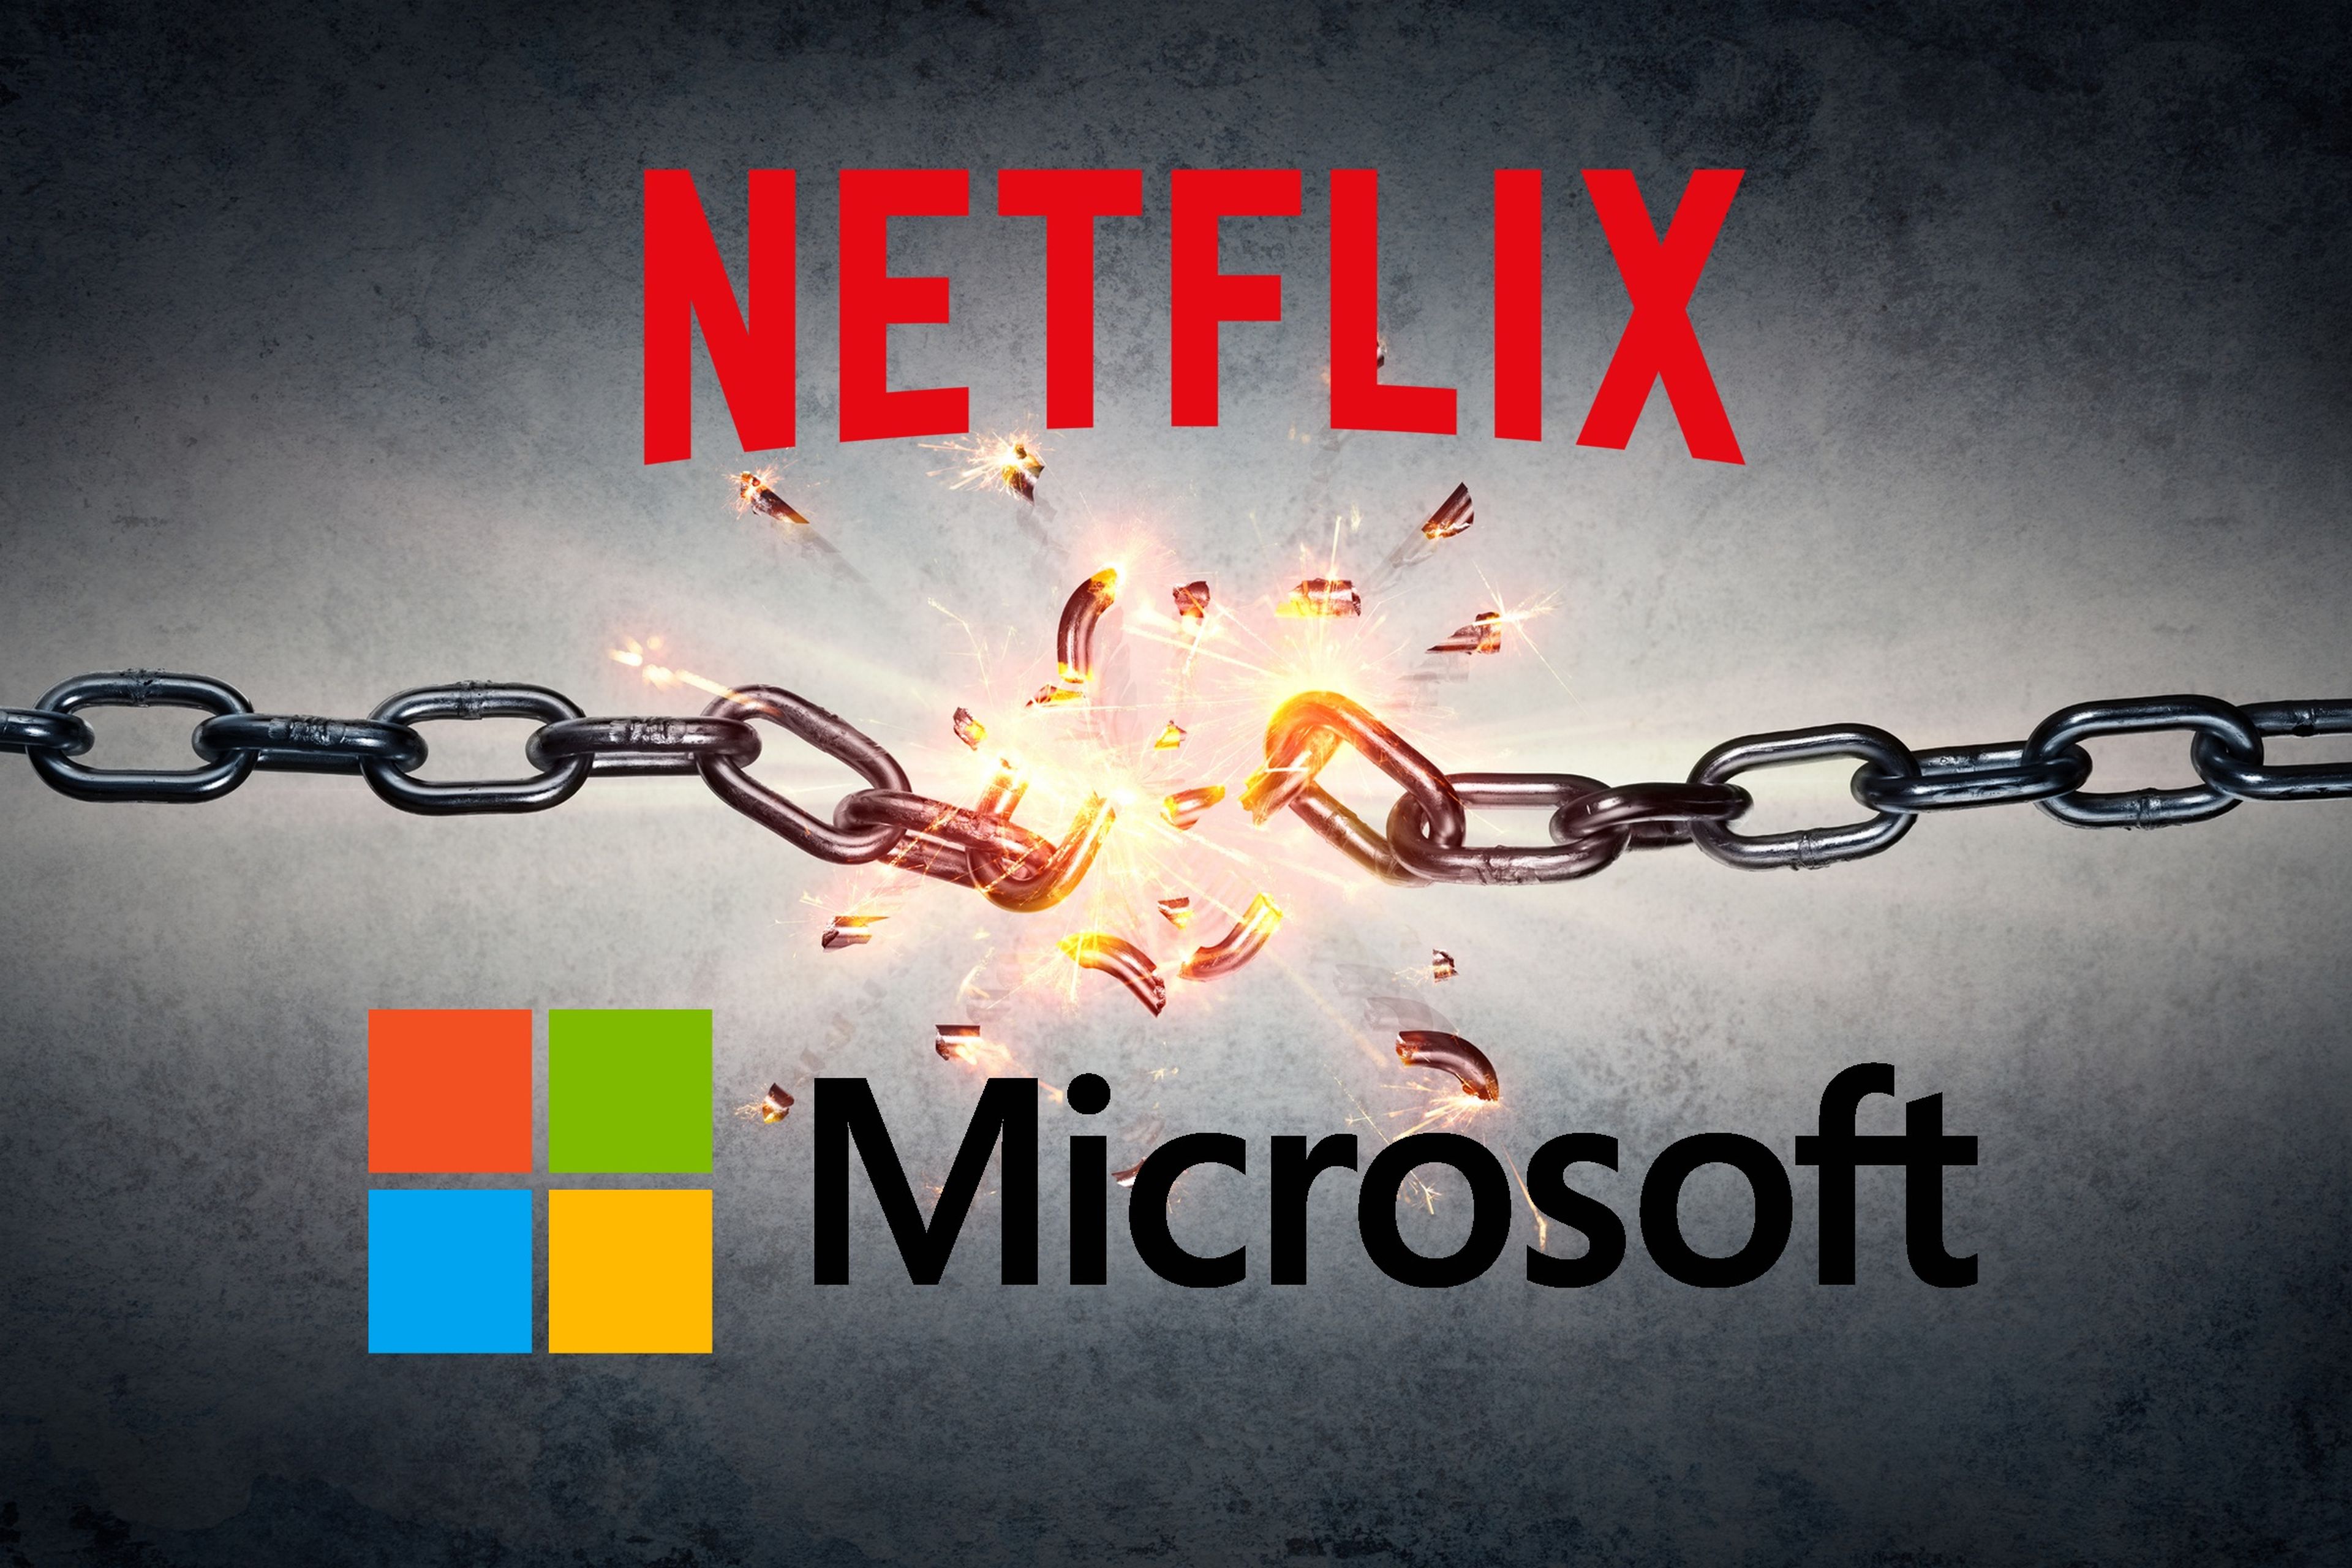 Netflix quiere romper cadenas con Microsoft